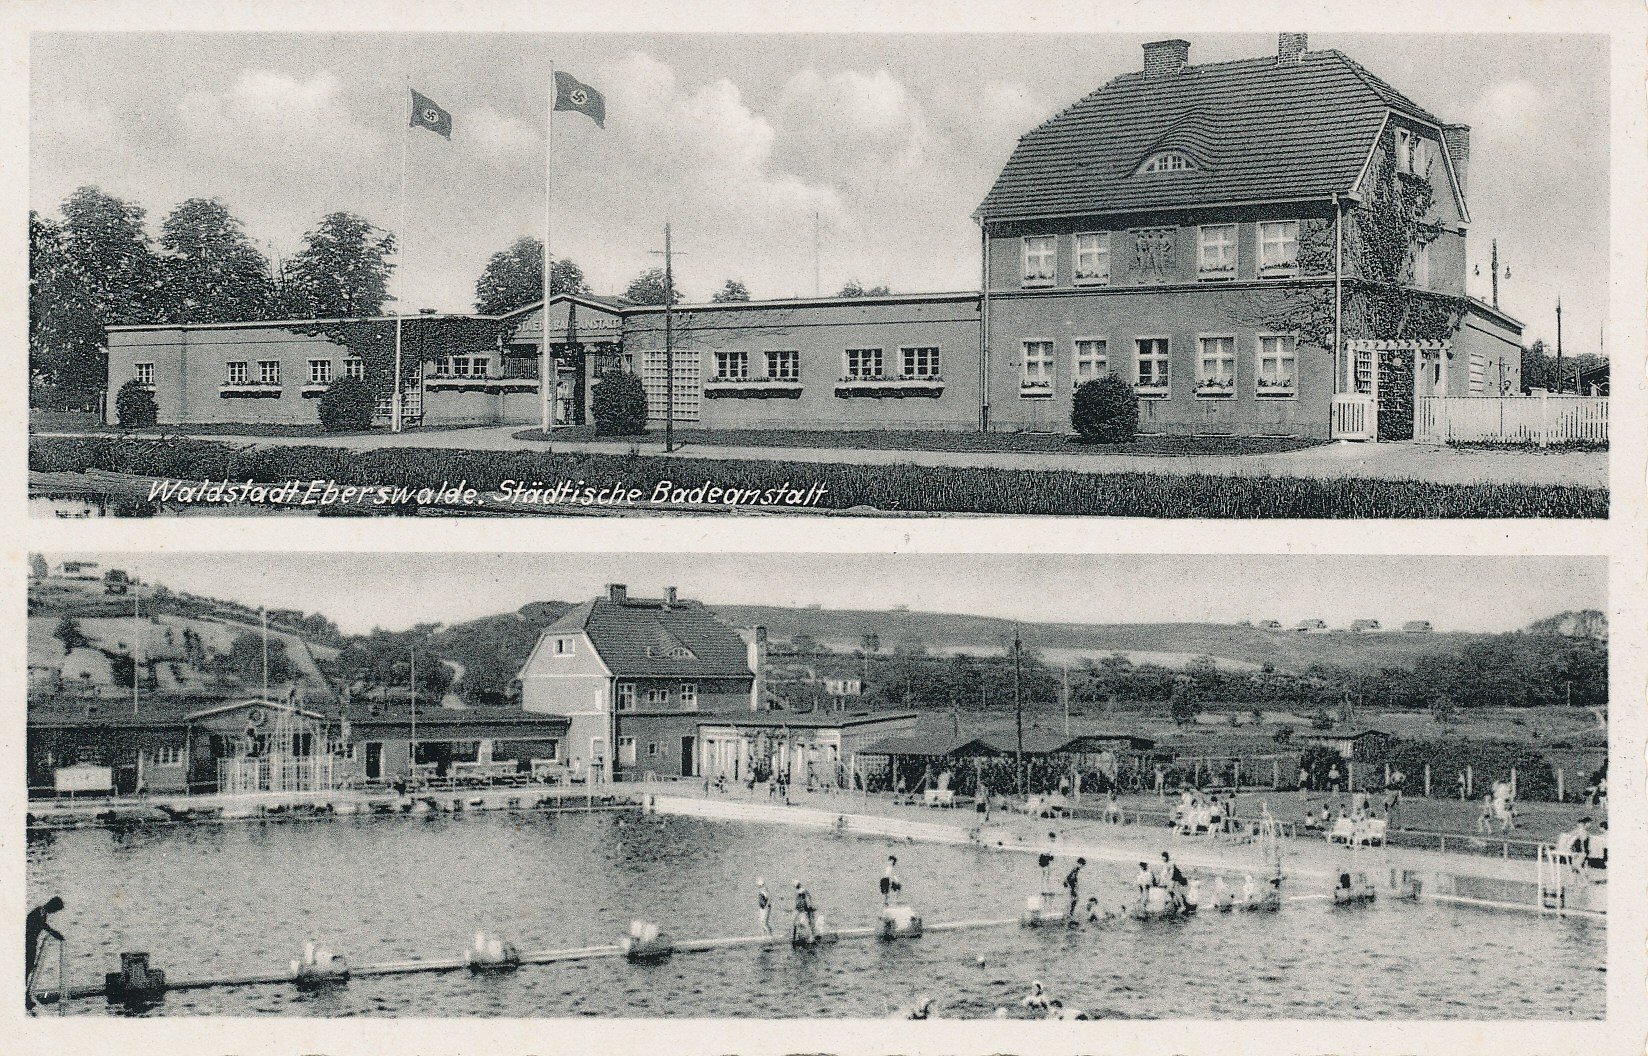 Postkarte Sommer in der Städtischen Badeanstalt Eberswalde, 1940 (Museum Eberswalde CC BY-NC-SA)